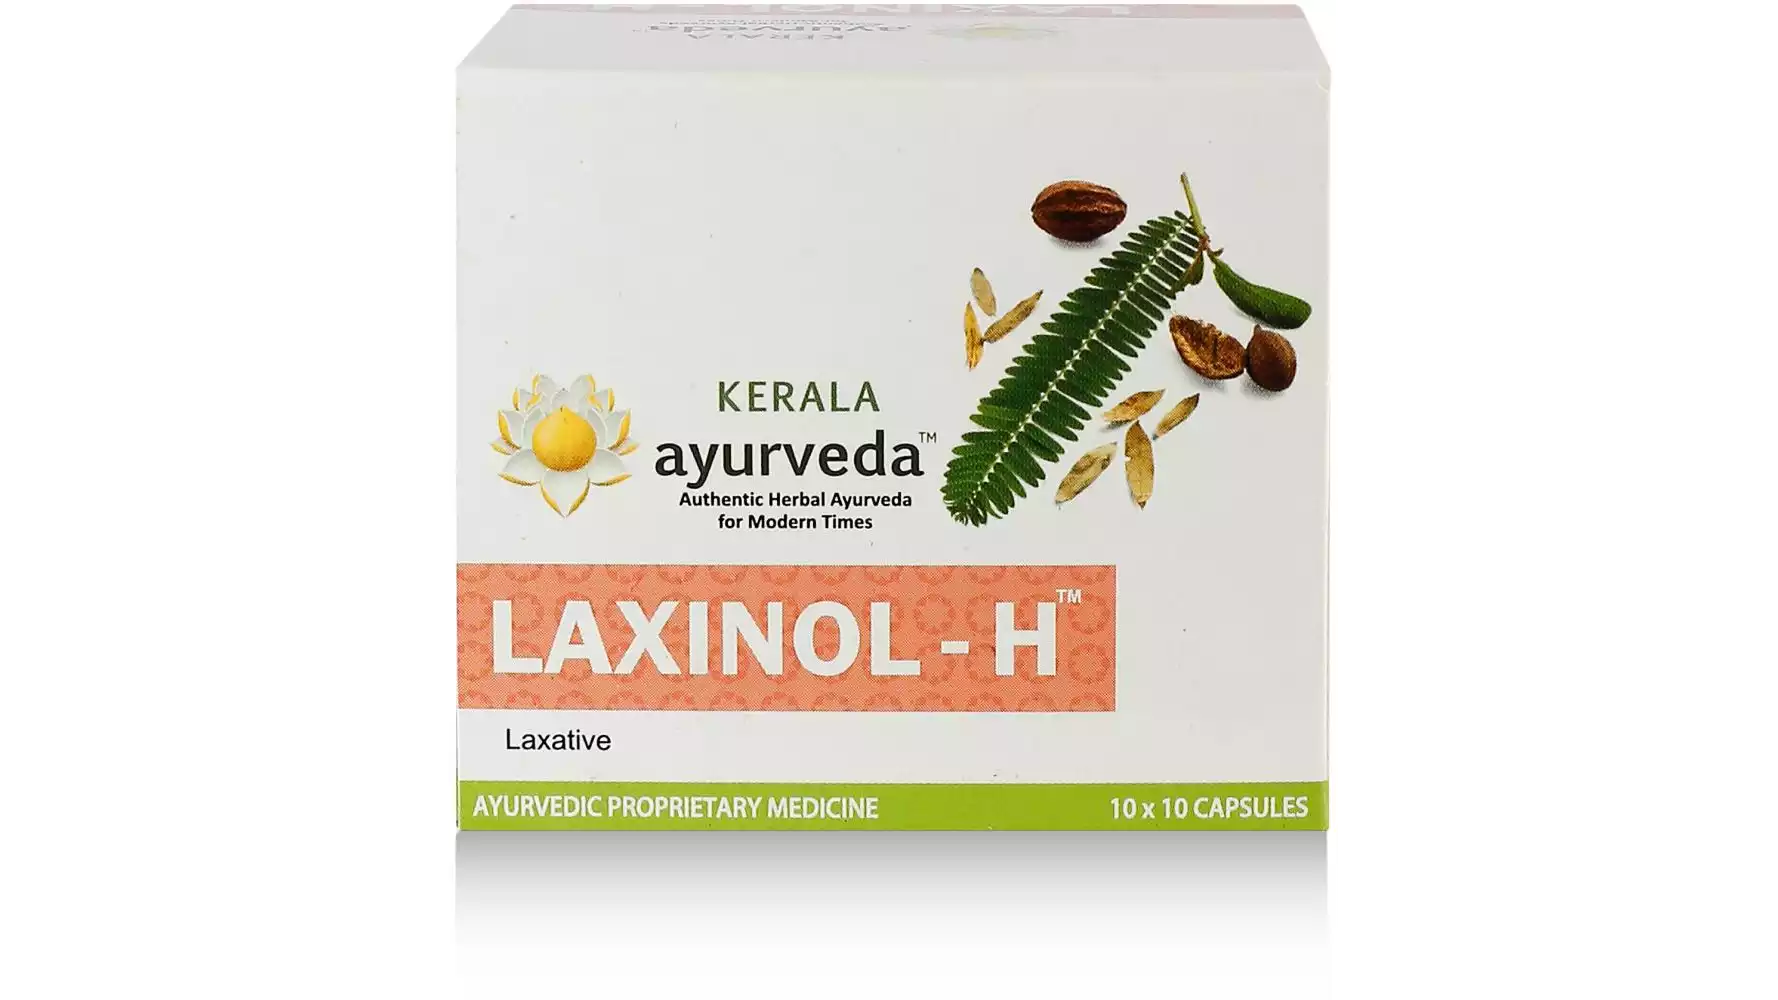 Kerala Ayurveda Laxinol-H Capsule (100caps)